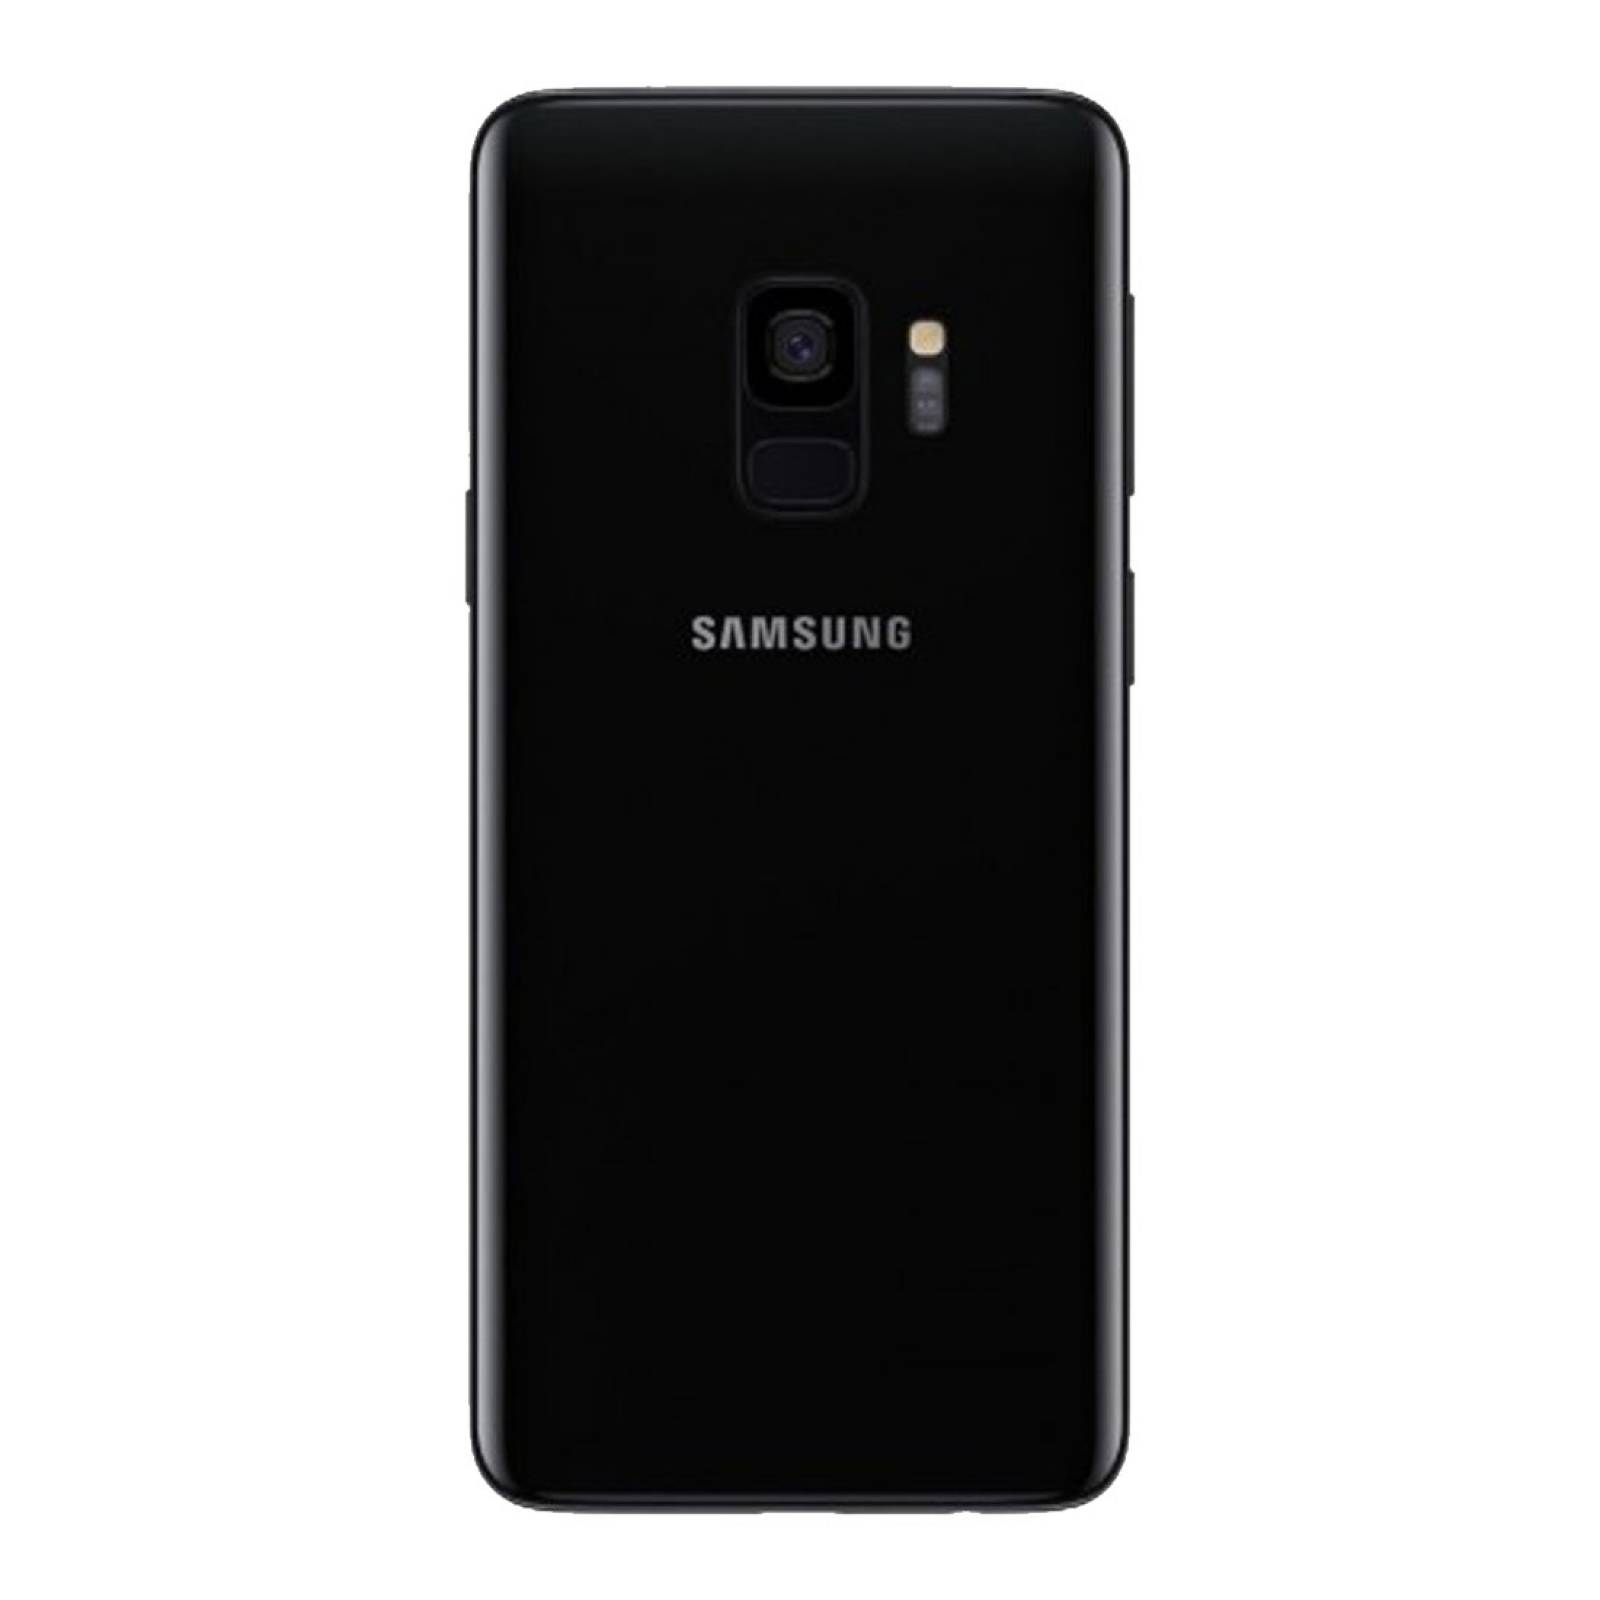 SMARTPHONE NUEVO SAMSUNG GALAXY S9 64GB NEGRO LIBERADO